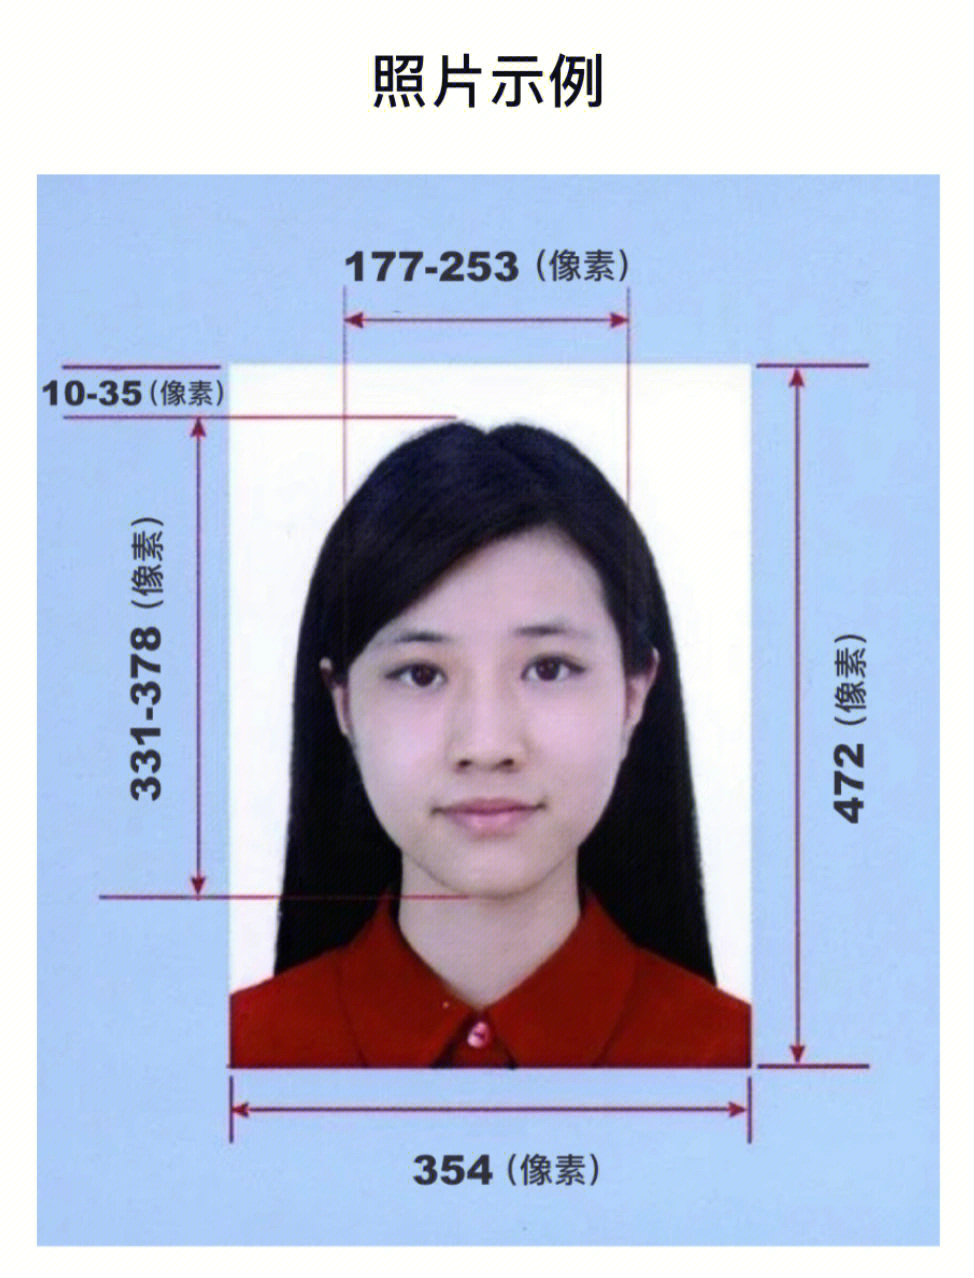 护照图片尺寸要求图片